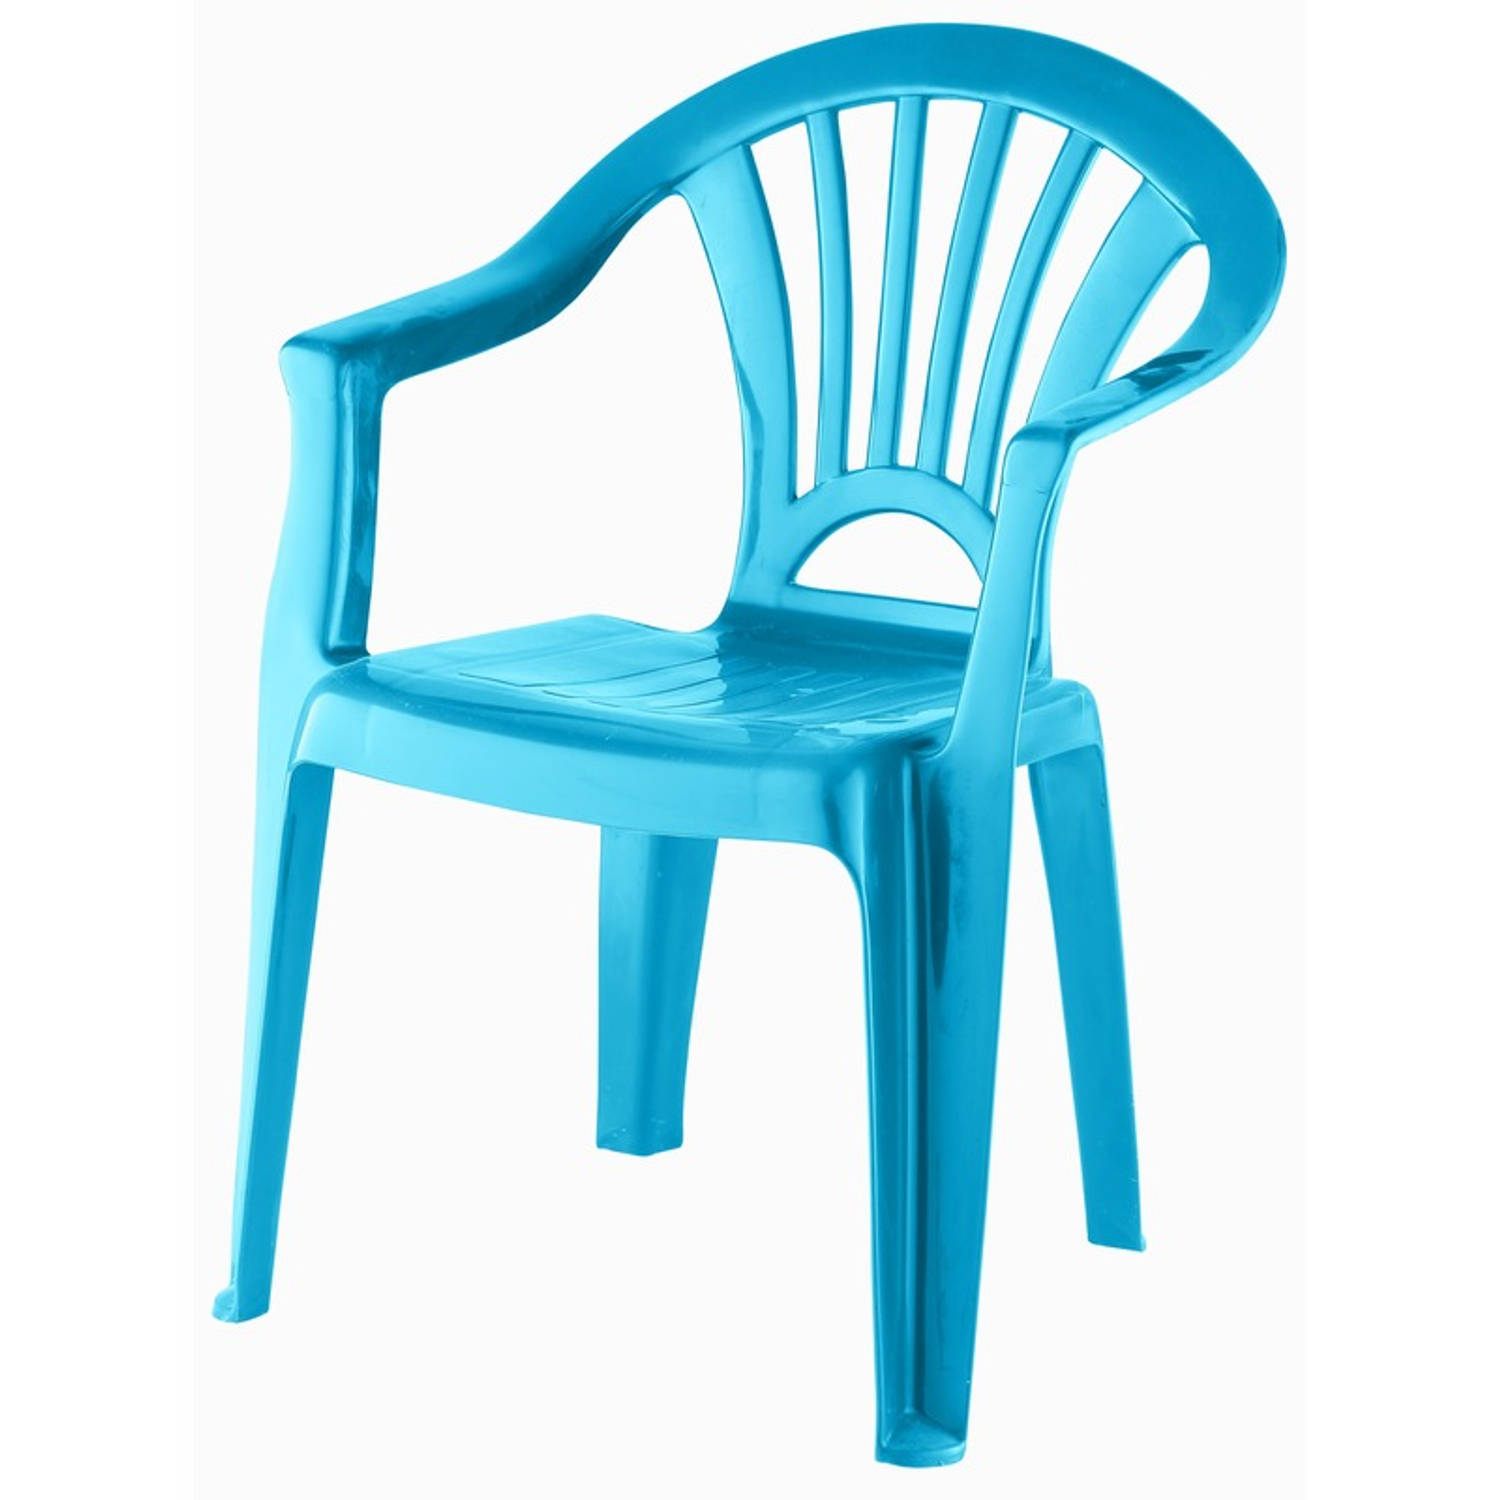 Kinderstoel blauw kunststof 37 x 31 x 51 cm Kinderstoelen | Blokker